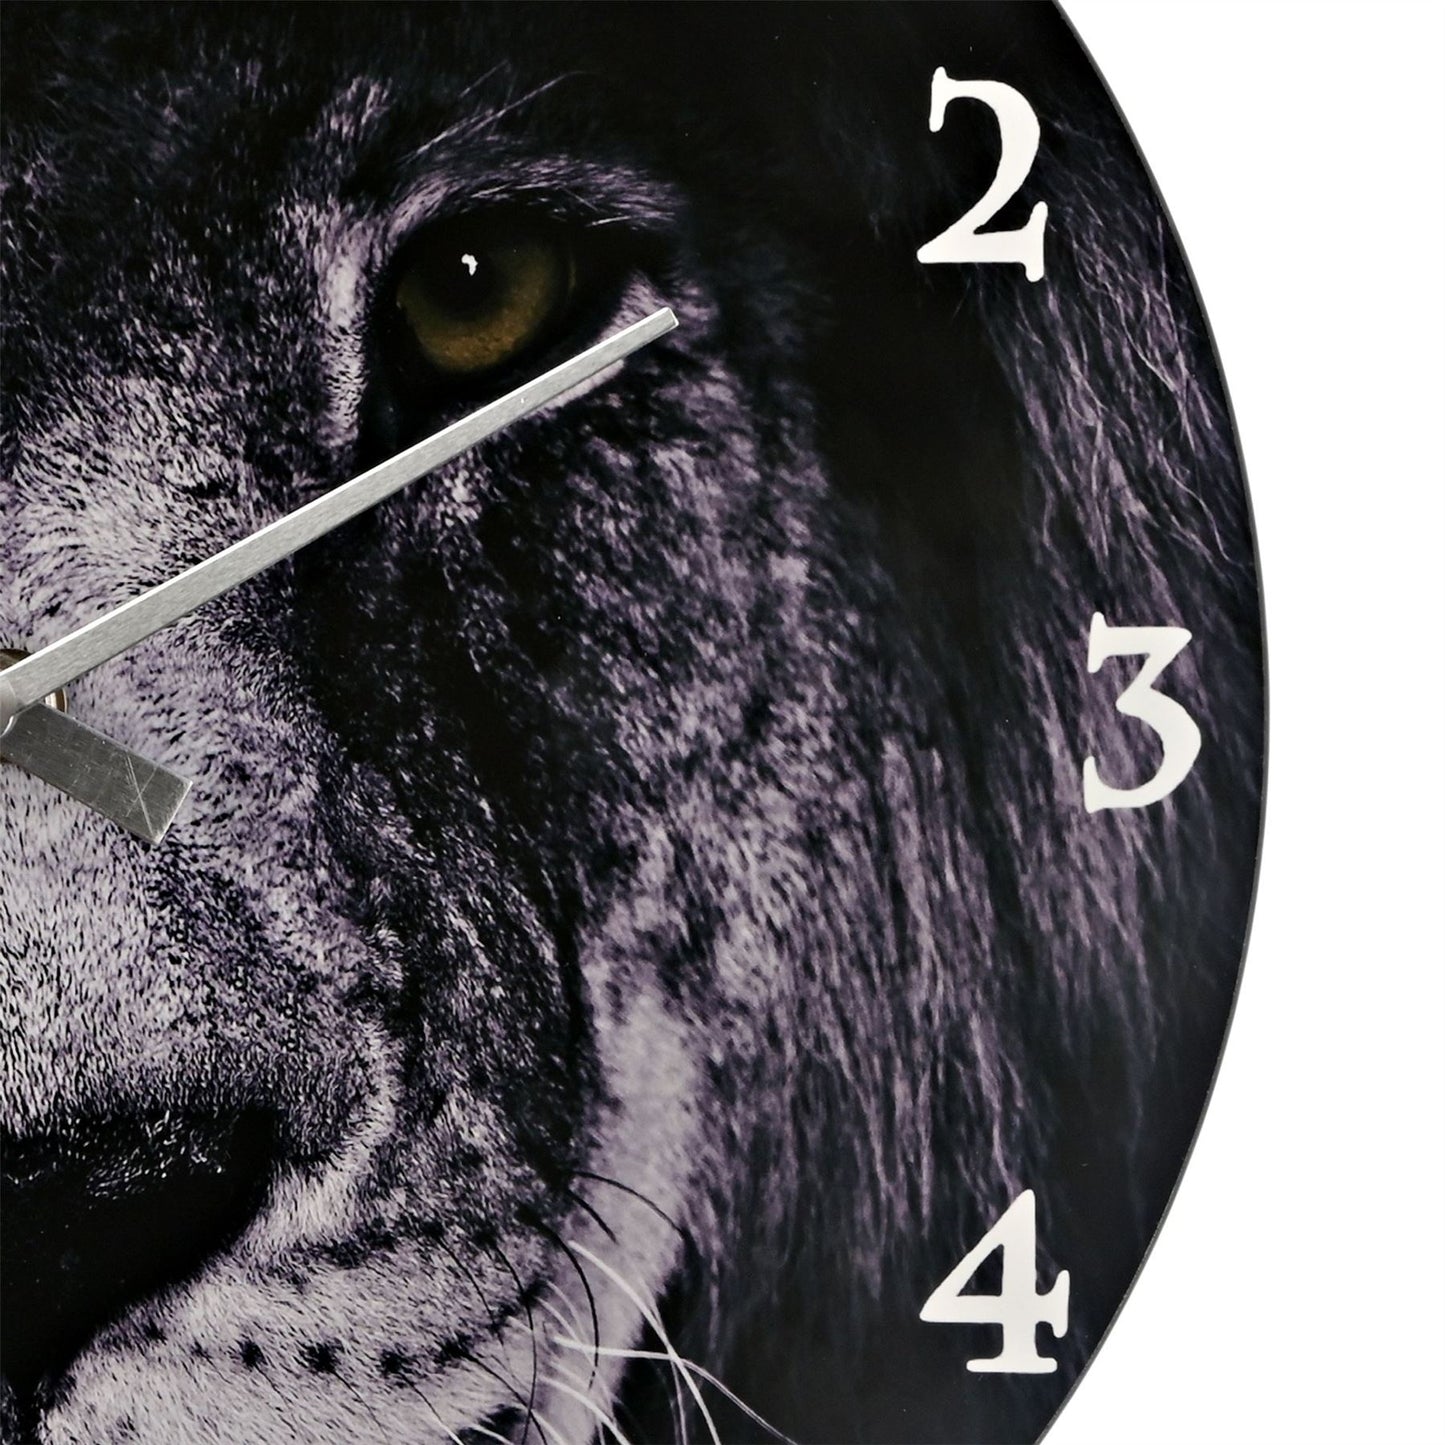 Naturecraft Wall Clock Lion Design